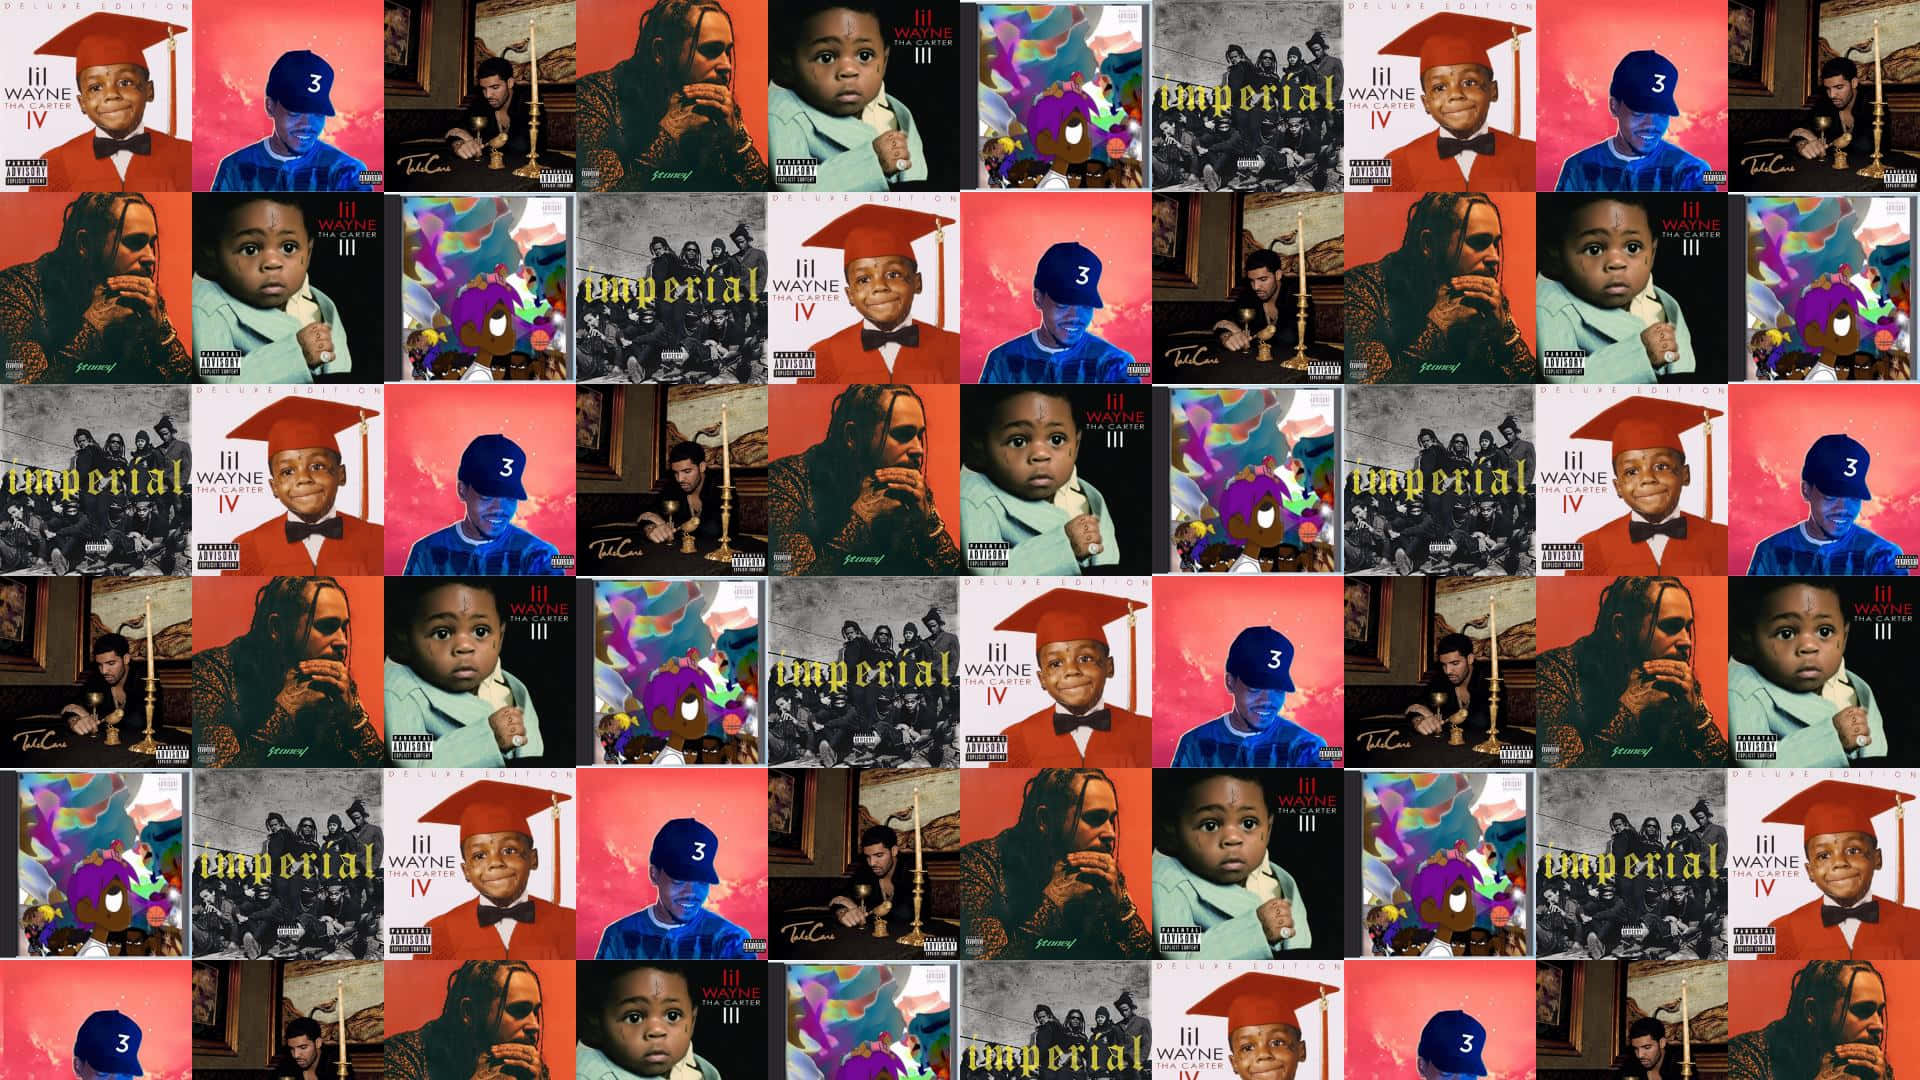 En collage af billeder af mennesker i forskellige stillinger. Wallpaper